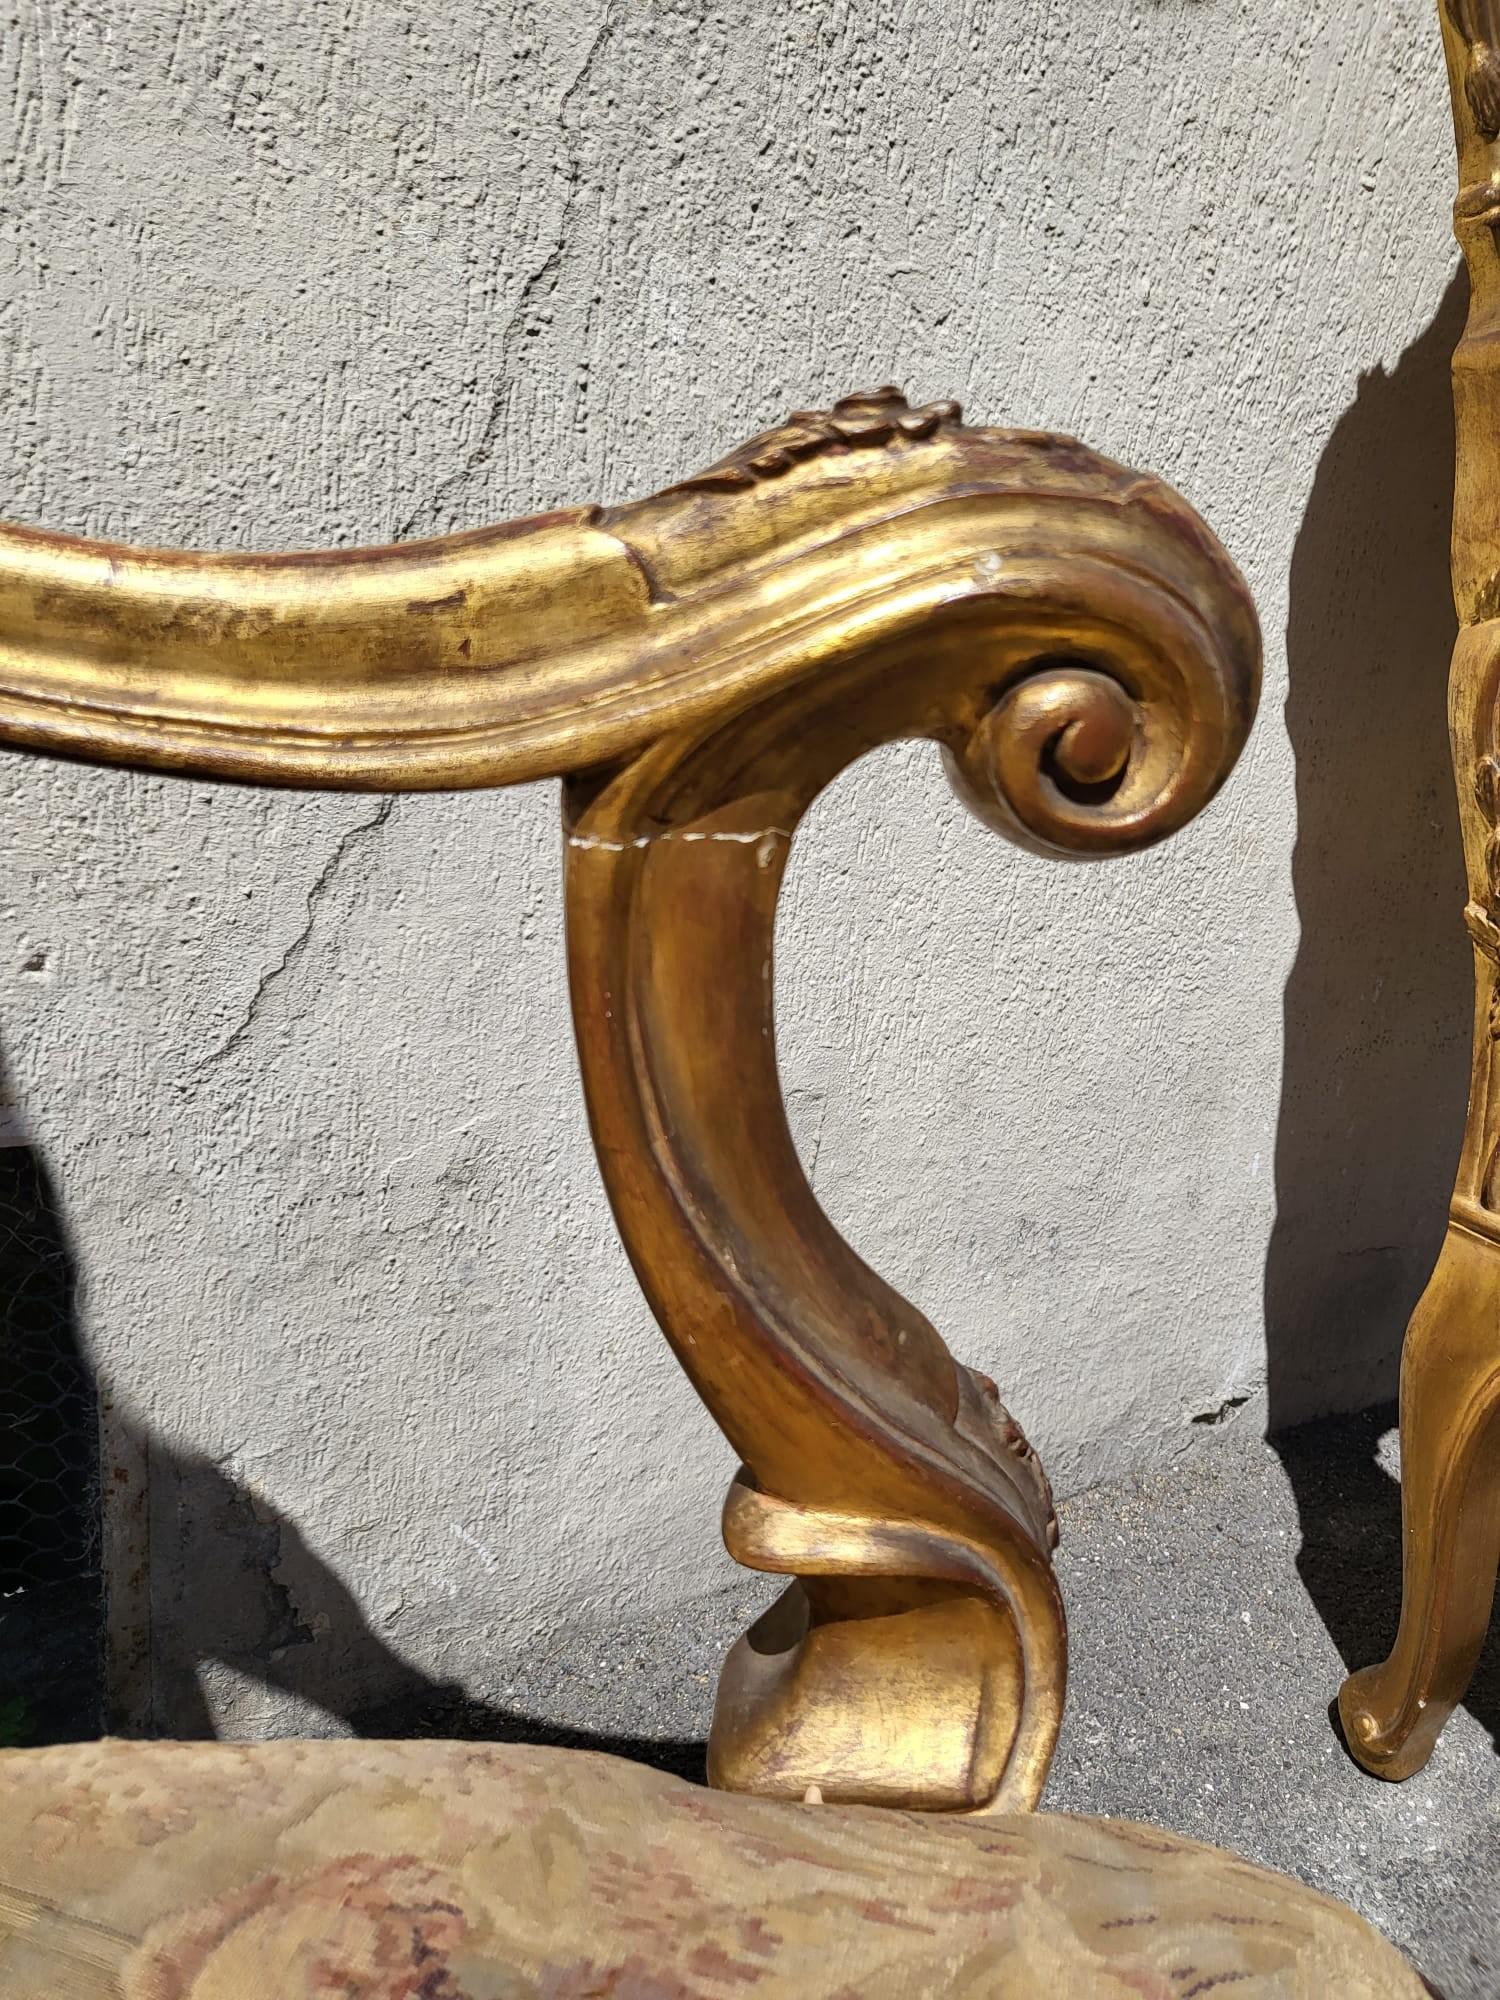 Sehr schönes Paar großer Sessel aus vergoldetem und geschnitztem Holz im Louis XV-Stil, Modell 'Chassis'.

Sessel aus der Region Venedig, Abnutzungserscheinungen an der Vergoldung, Zierleisten müssen erneuert werden

Zeitraum Ende 19. Anfang 20.